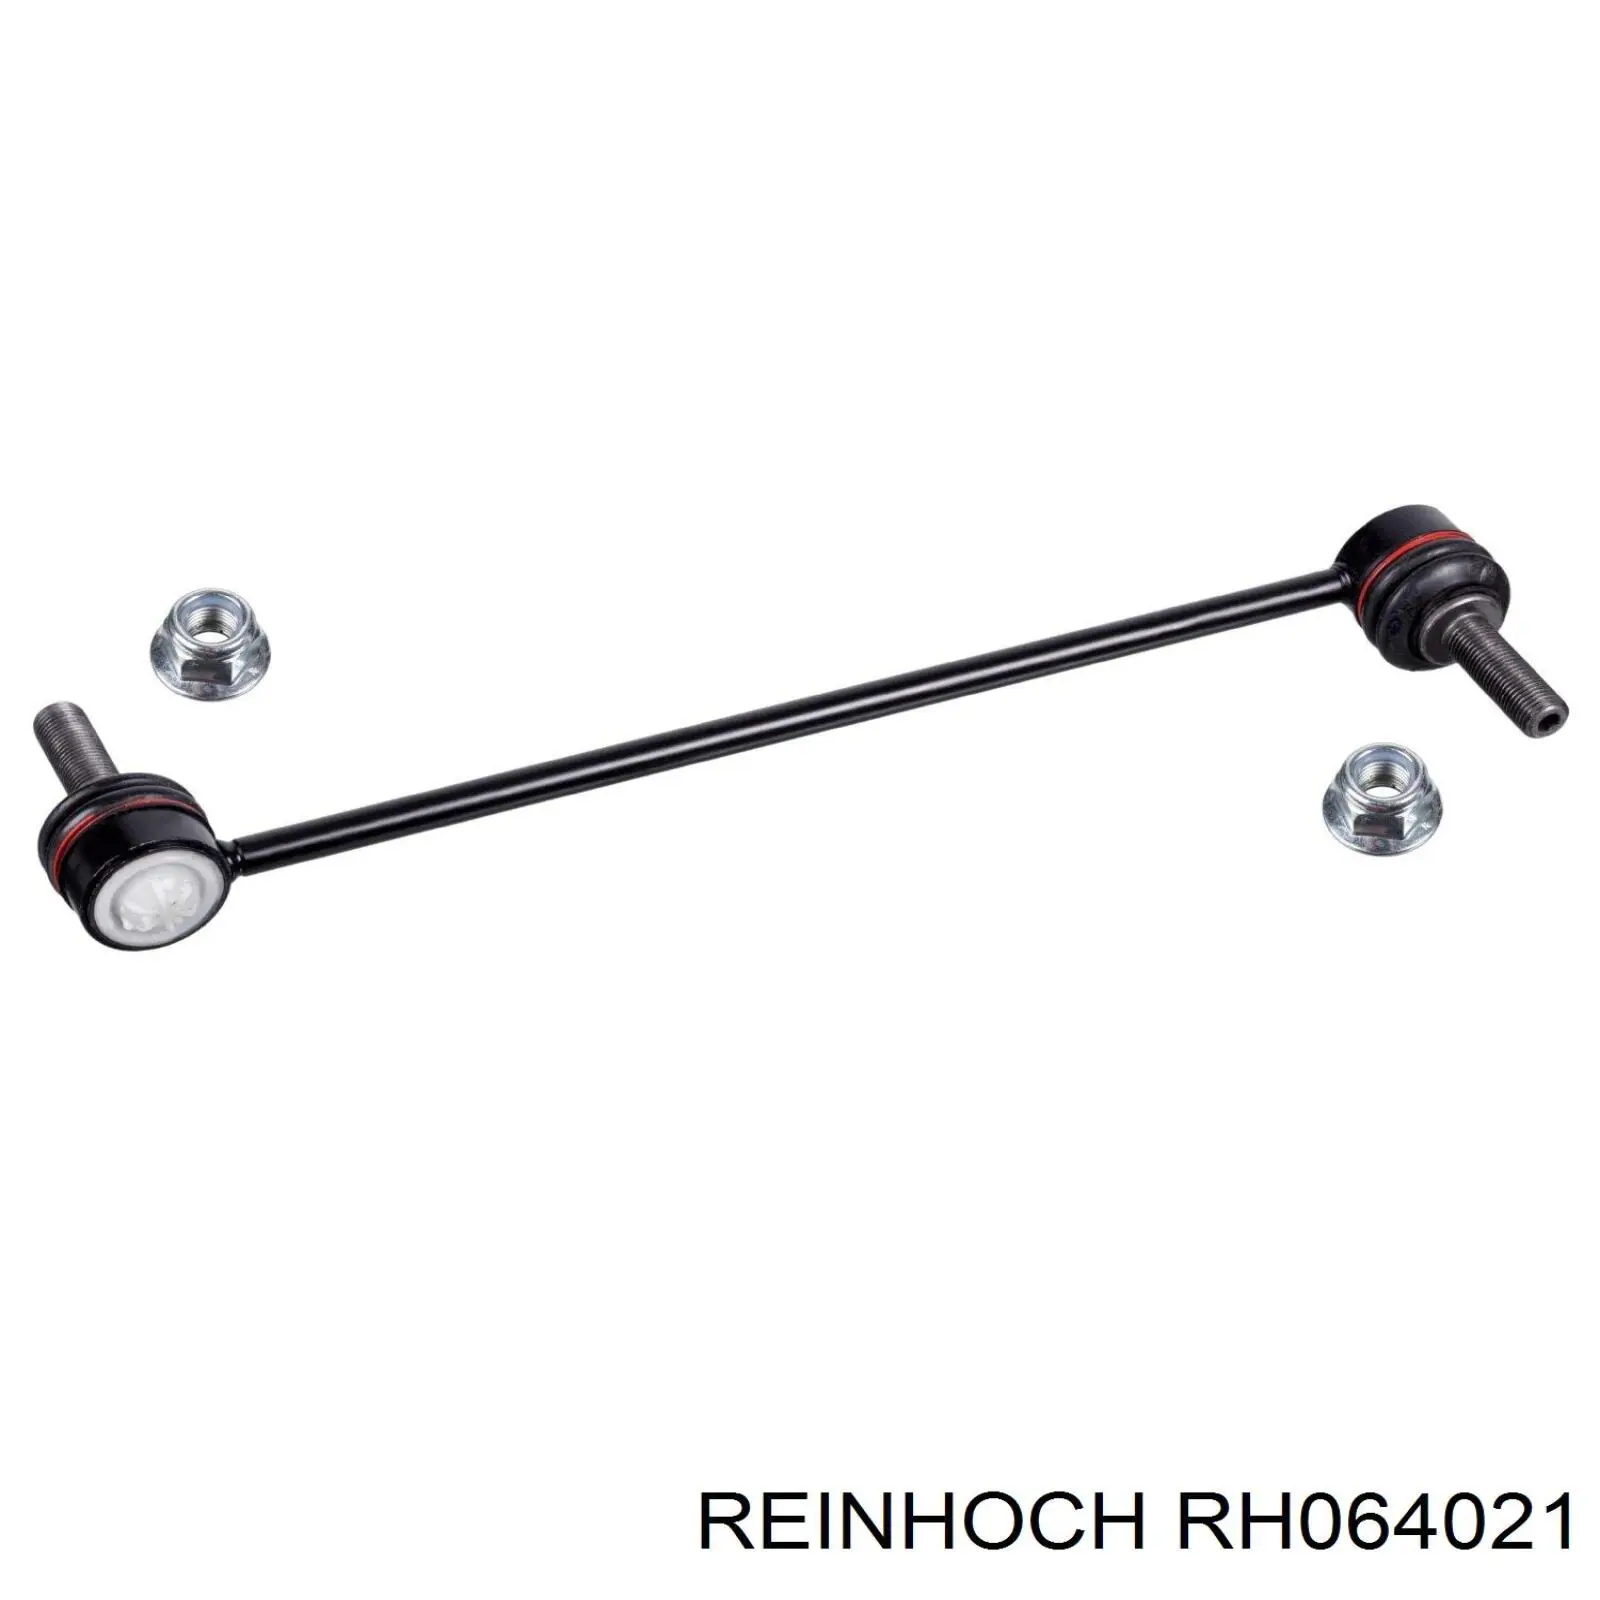 RH064021 Reinhoch montante de estabilizador dianteiro